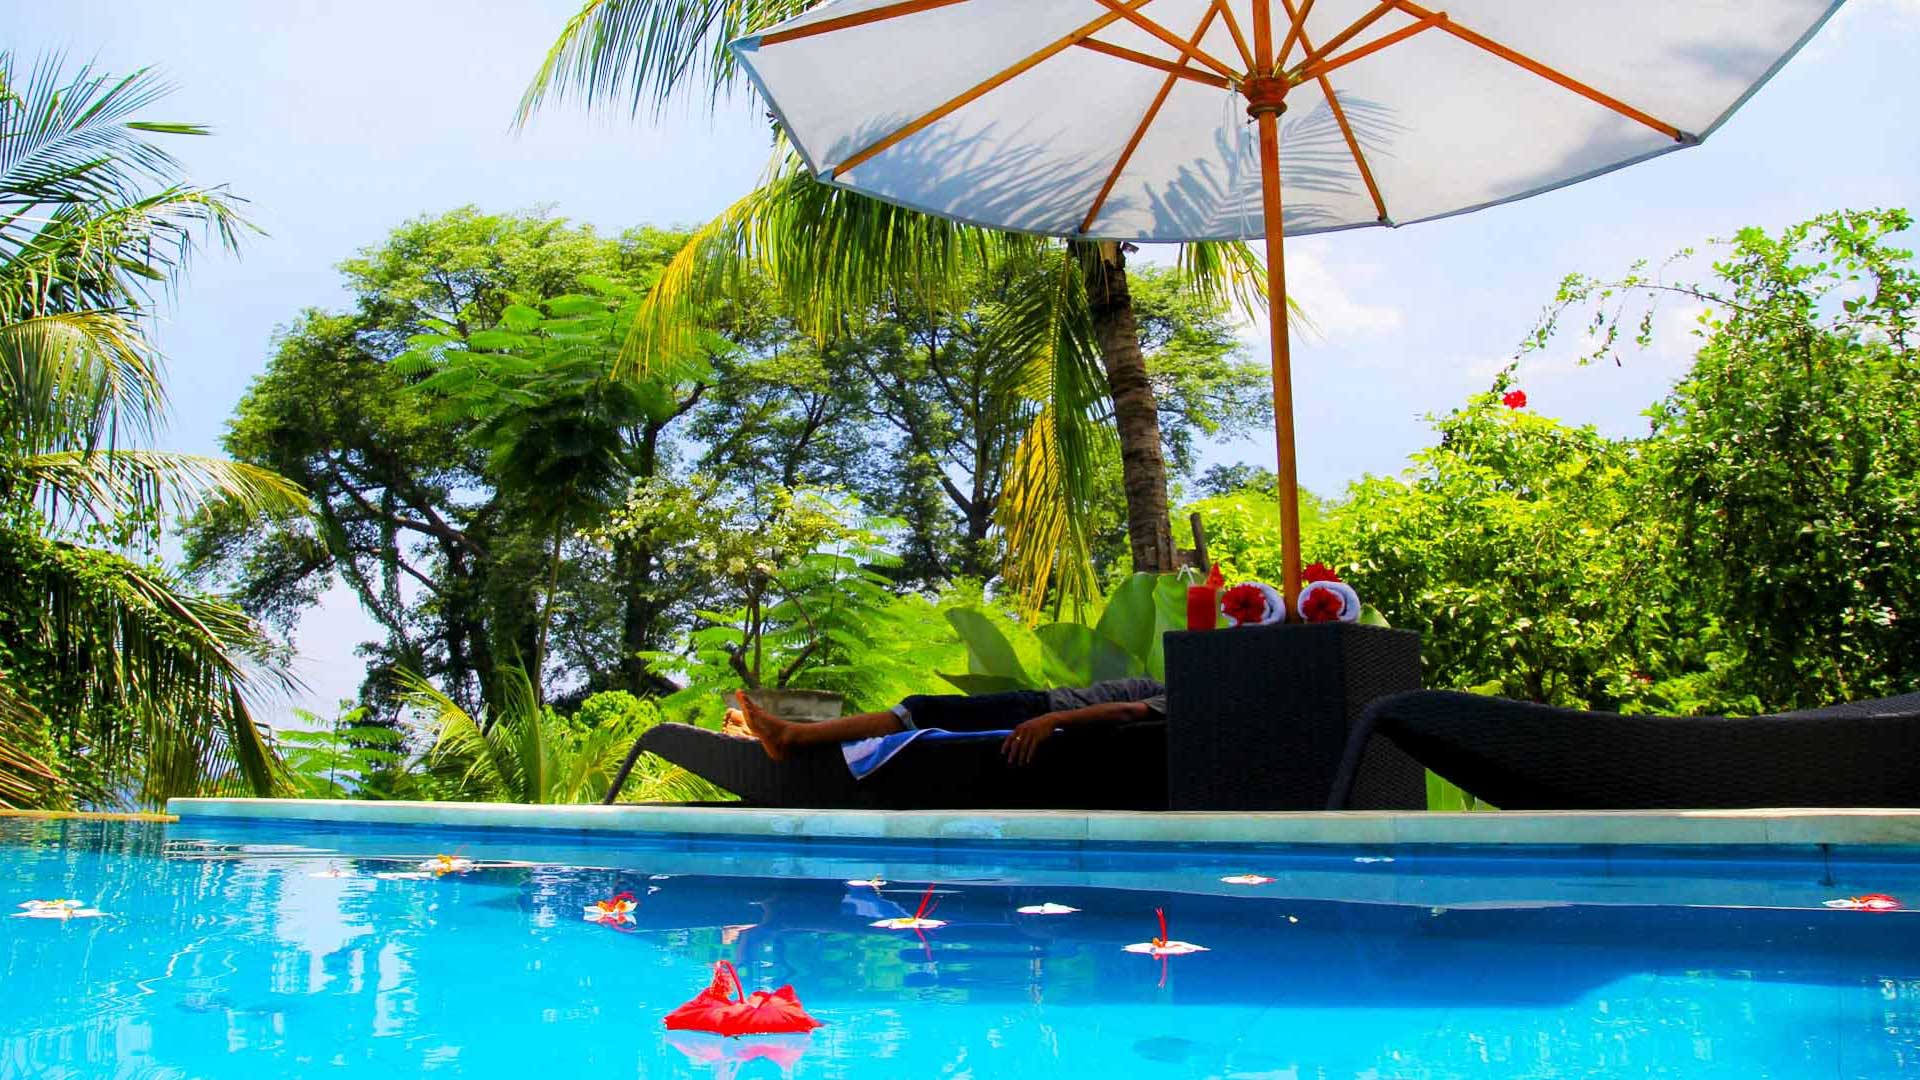 Bali Marina Villas – Pool and relaxation